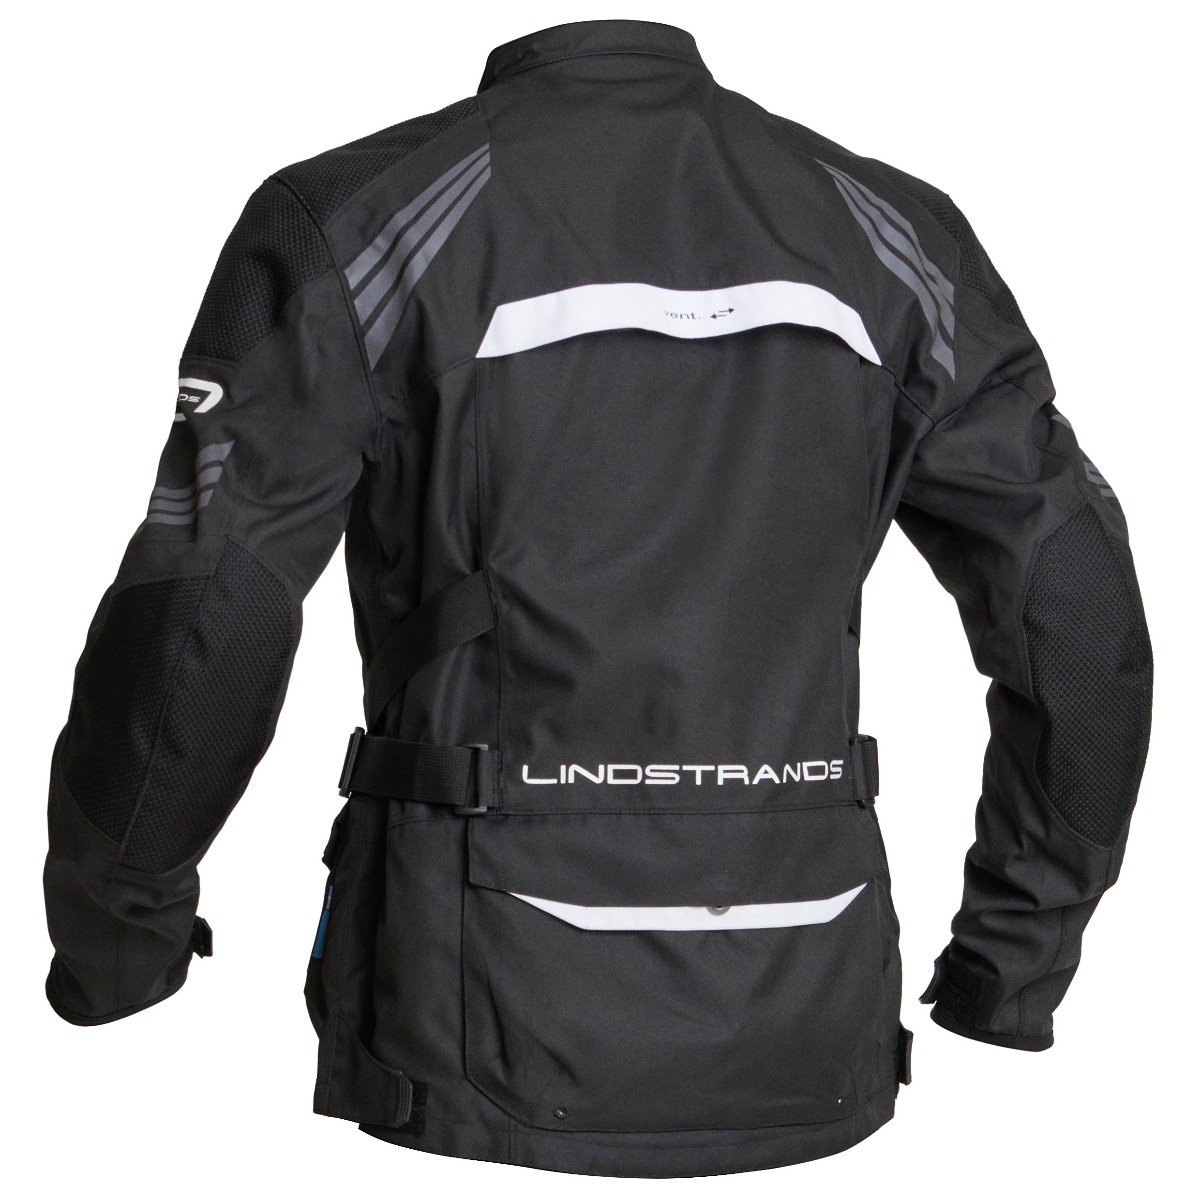 Image of Lindstrands Transtrand Jacket Black White Size 52 EN